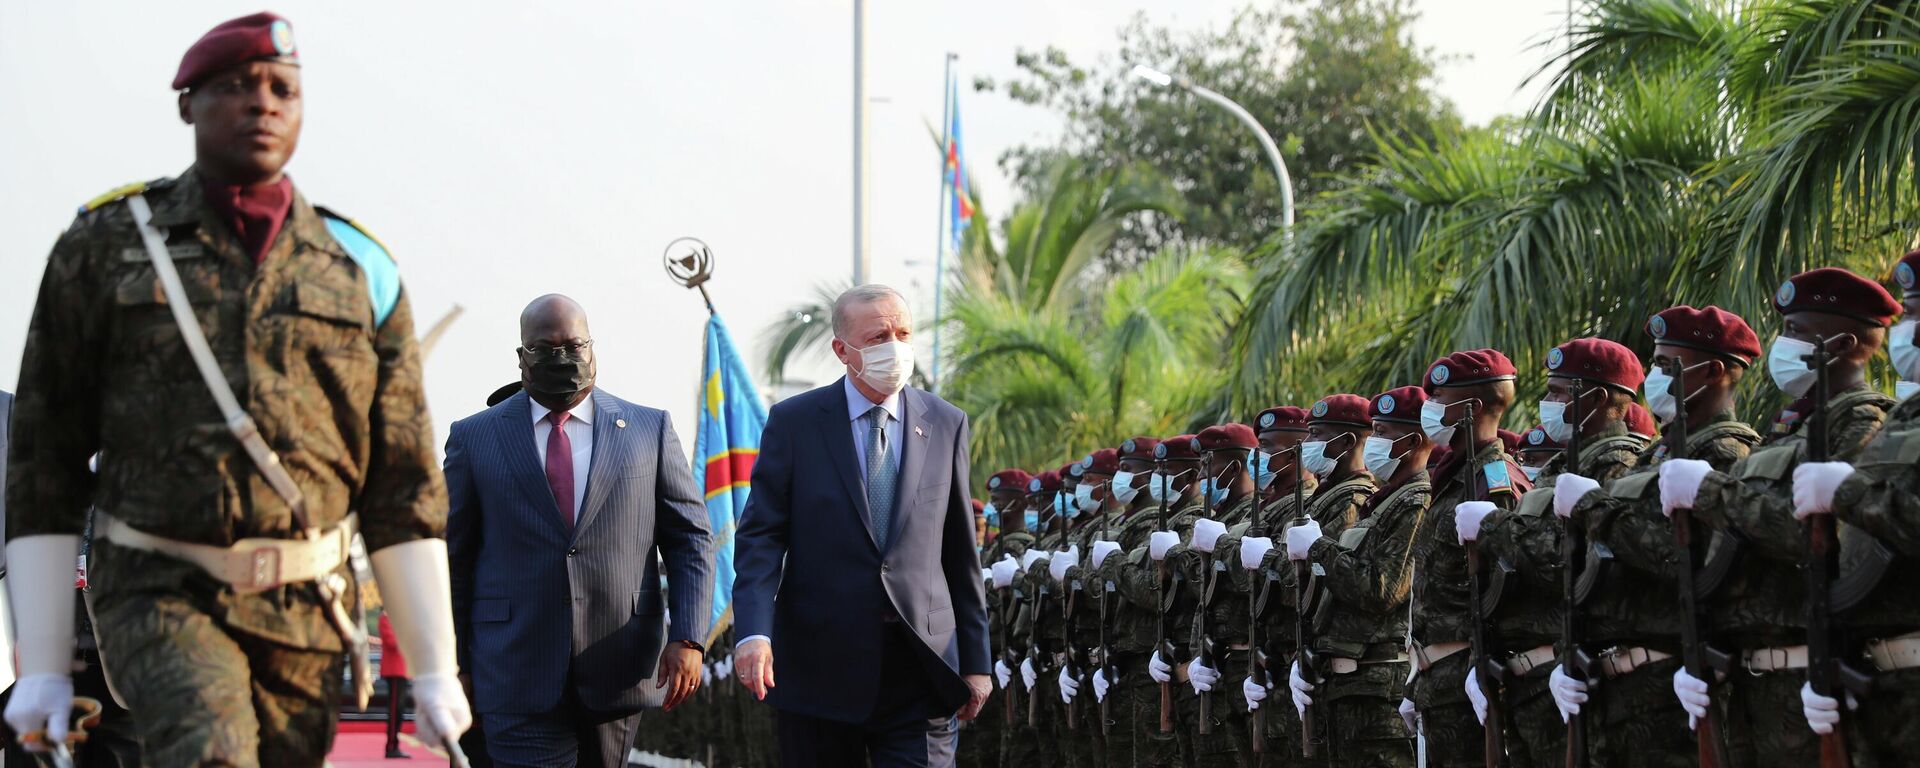 Cumhurbaşkanı Recep Tayyip Erdoğan, resmi ziyaret düzenlediği Kongo Demokratik Cumhuriyeti’nde resmi törenle karşılandı. - Sputnik Türkiye, 1920, 20.02.2022